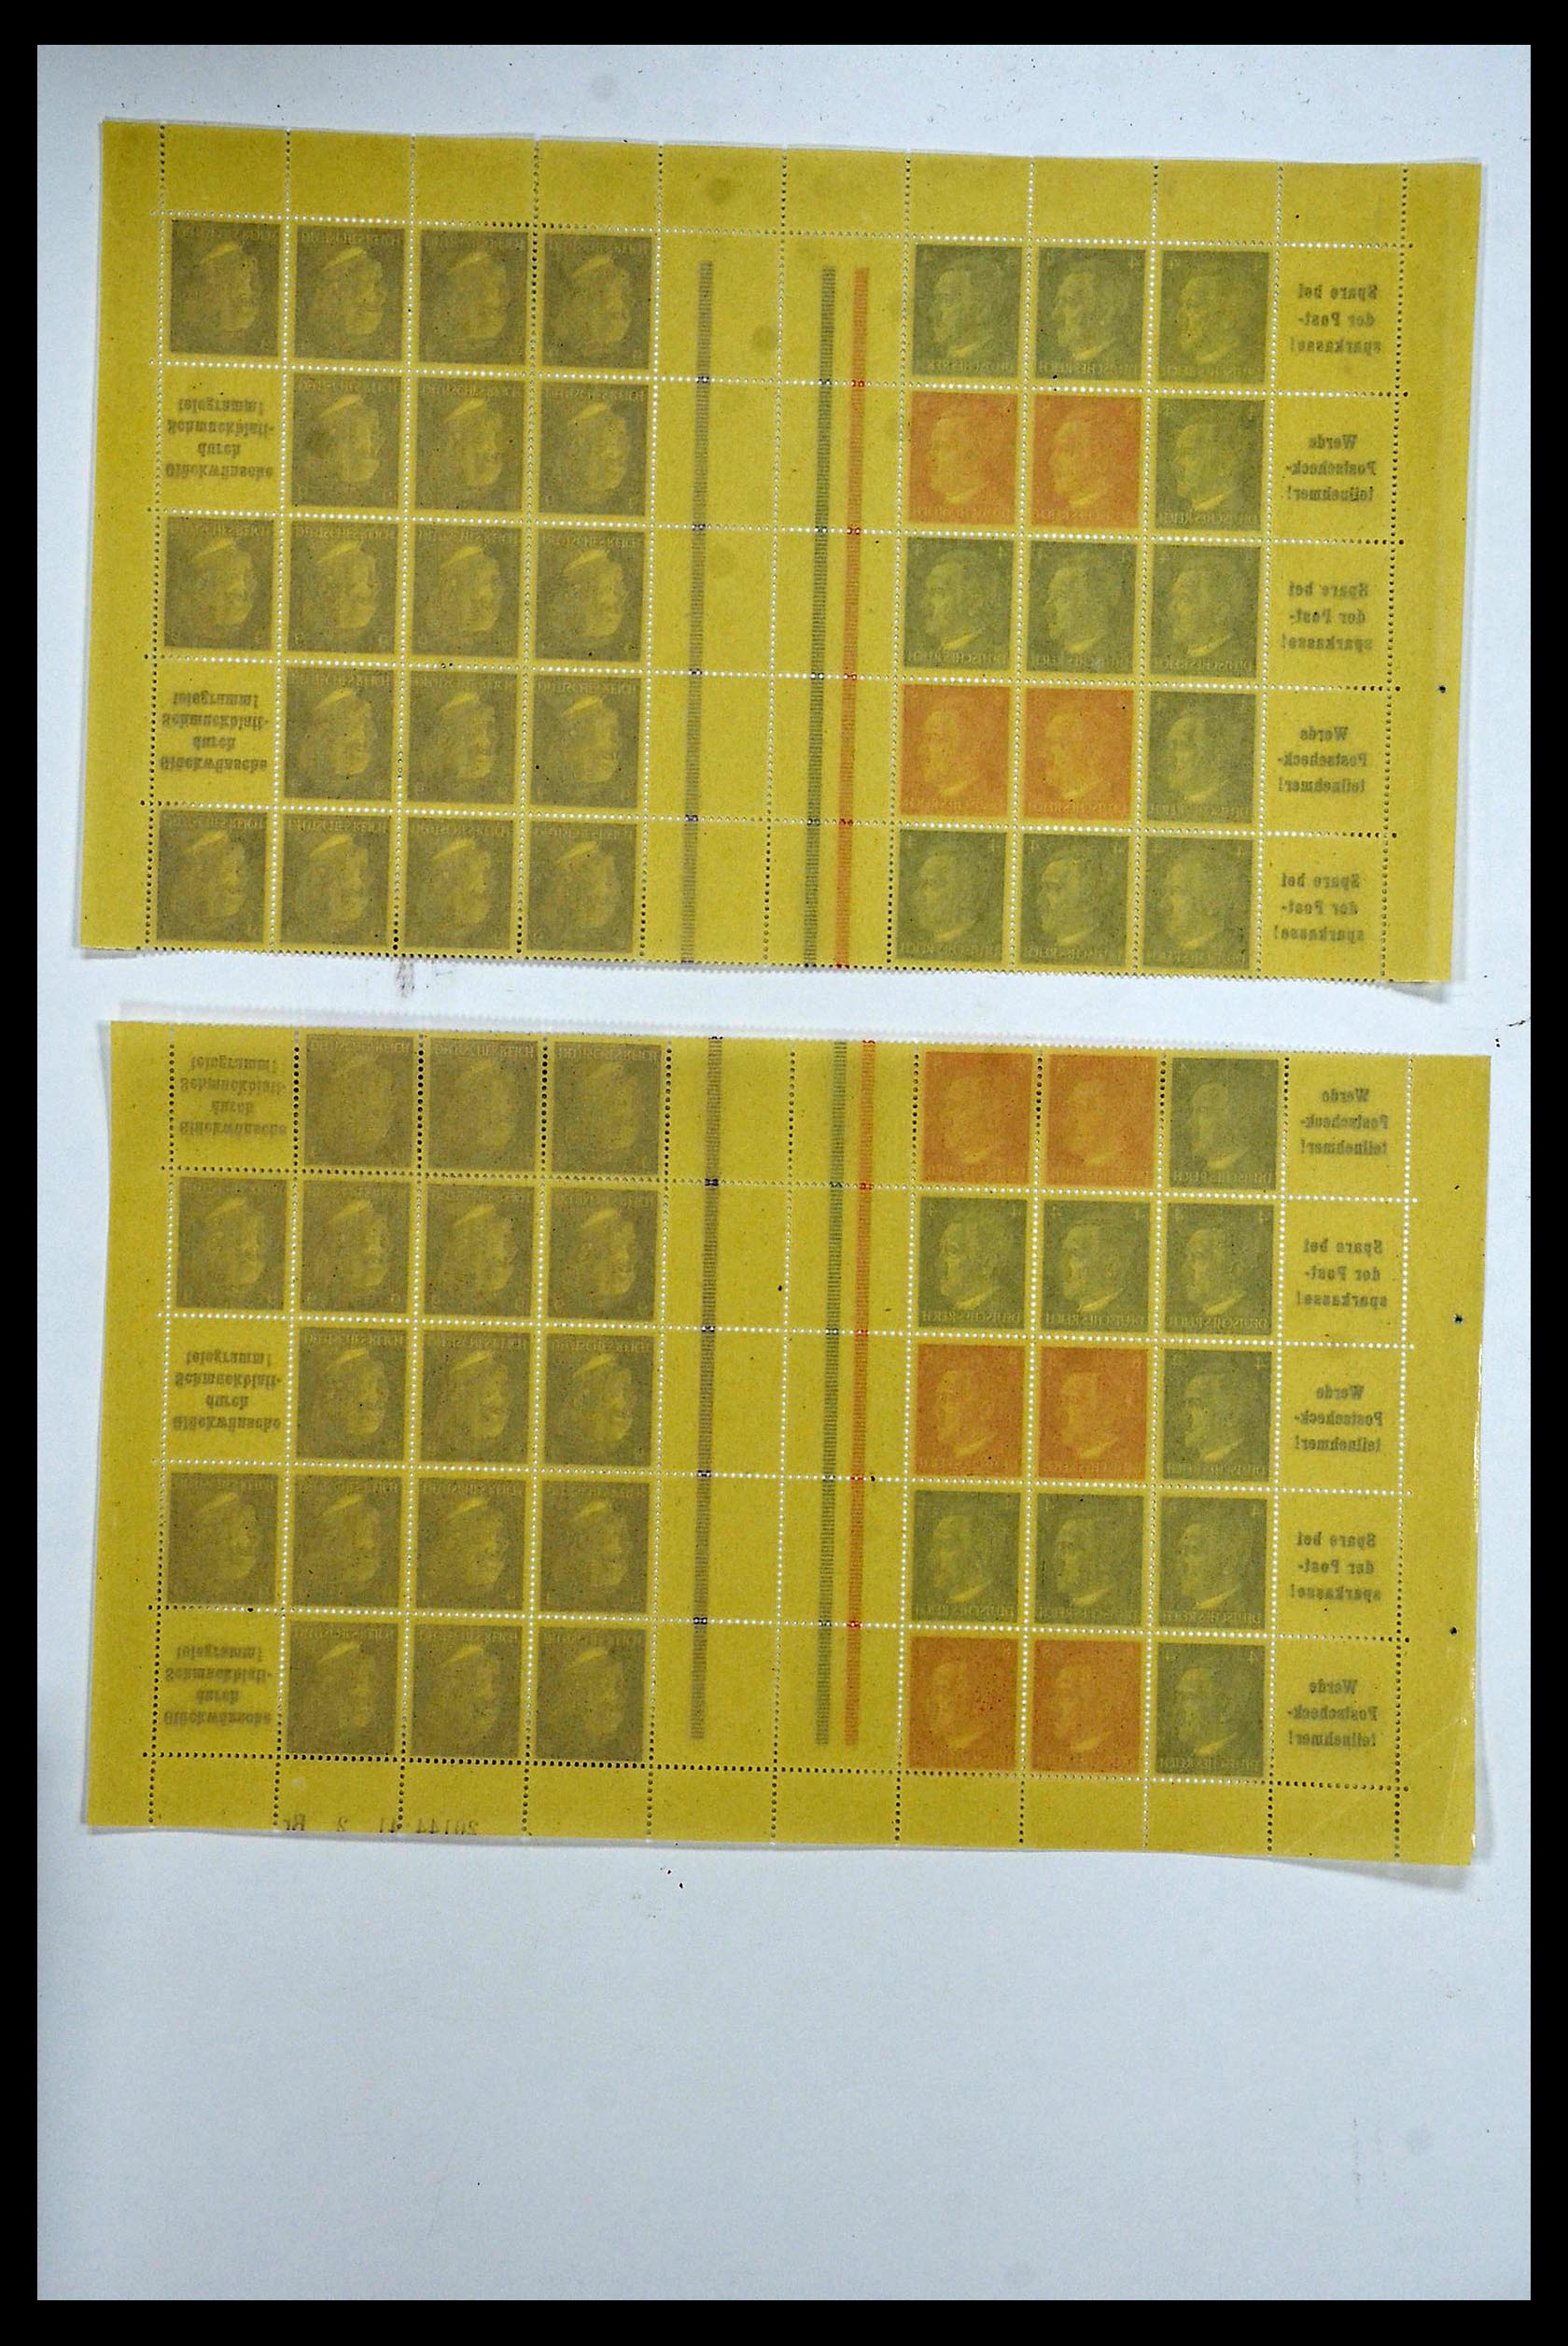 34164 078 - Stamp collection 34164 German Reich Markenheftchenbogen 1933-1942.